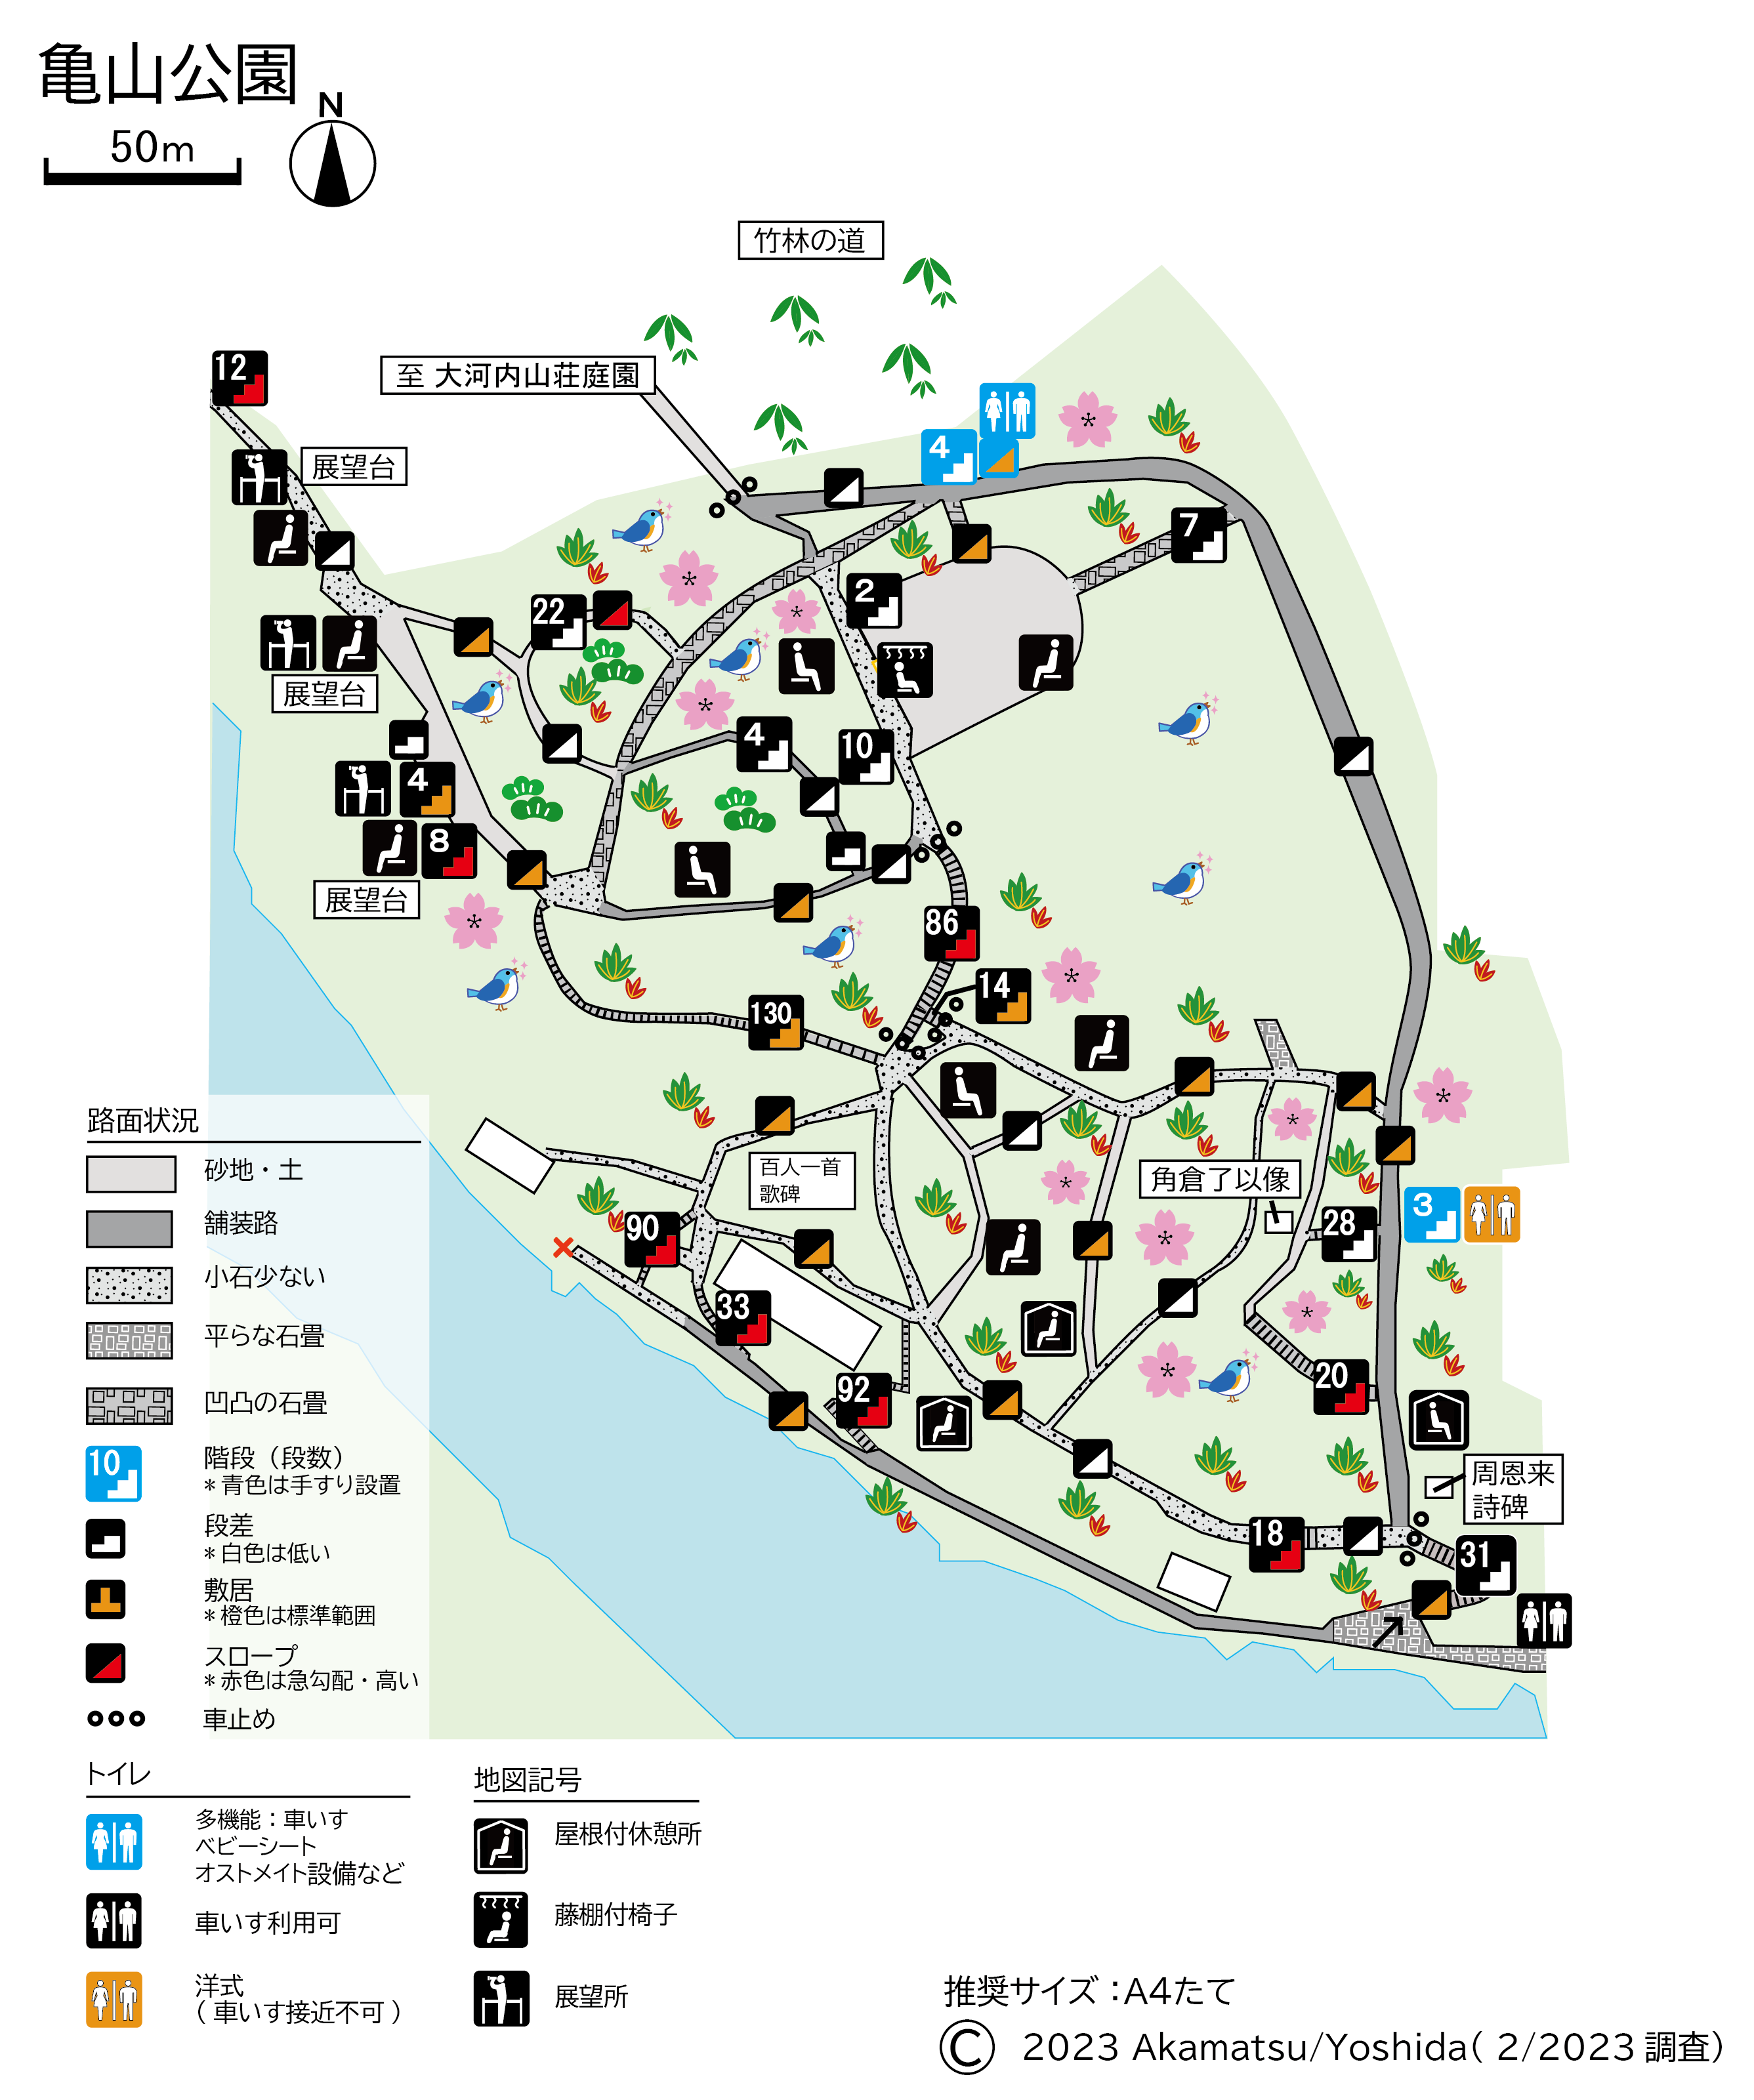 亀山公園凡例マップ90％縮小20230227.png